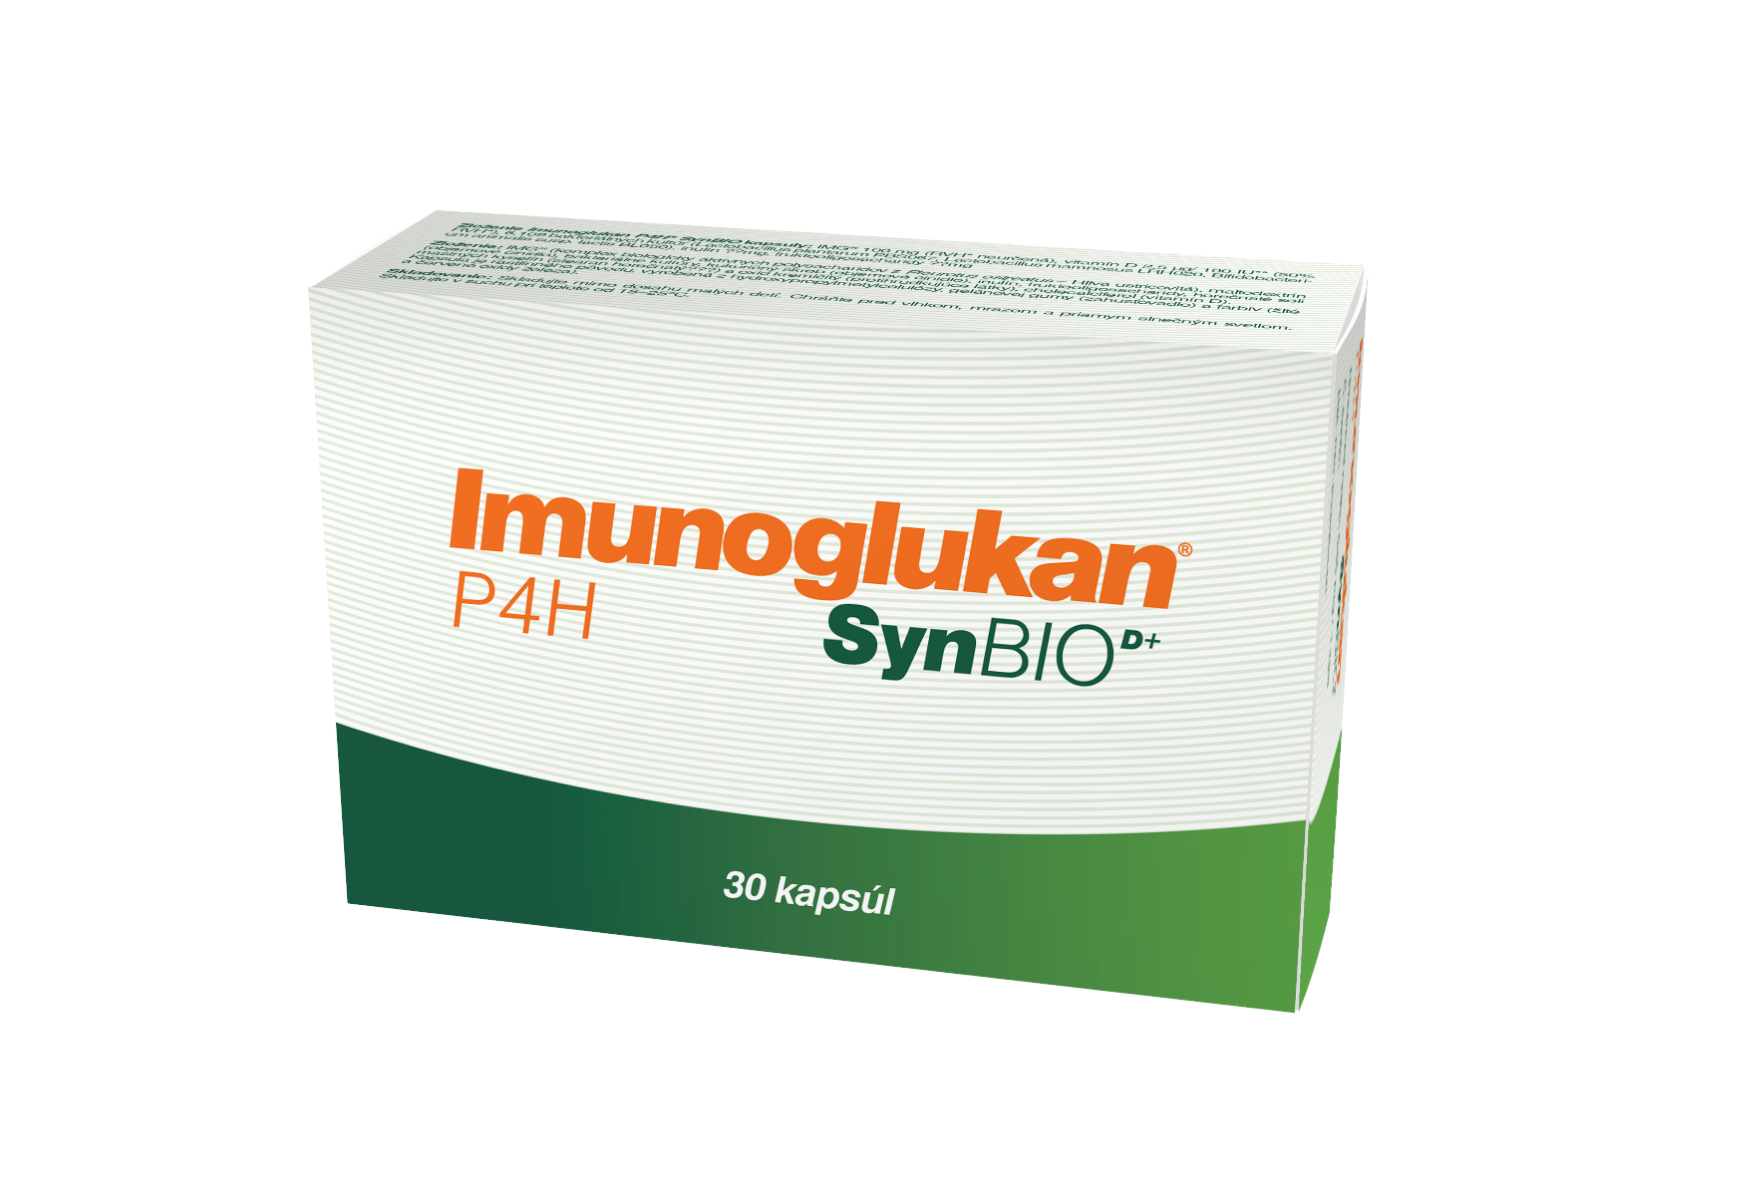 Imunoglukan P4H SynBIO D, cps 1x30 ks